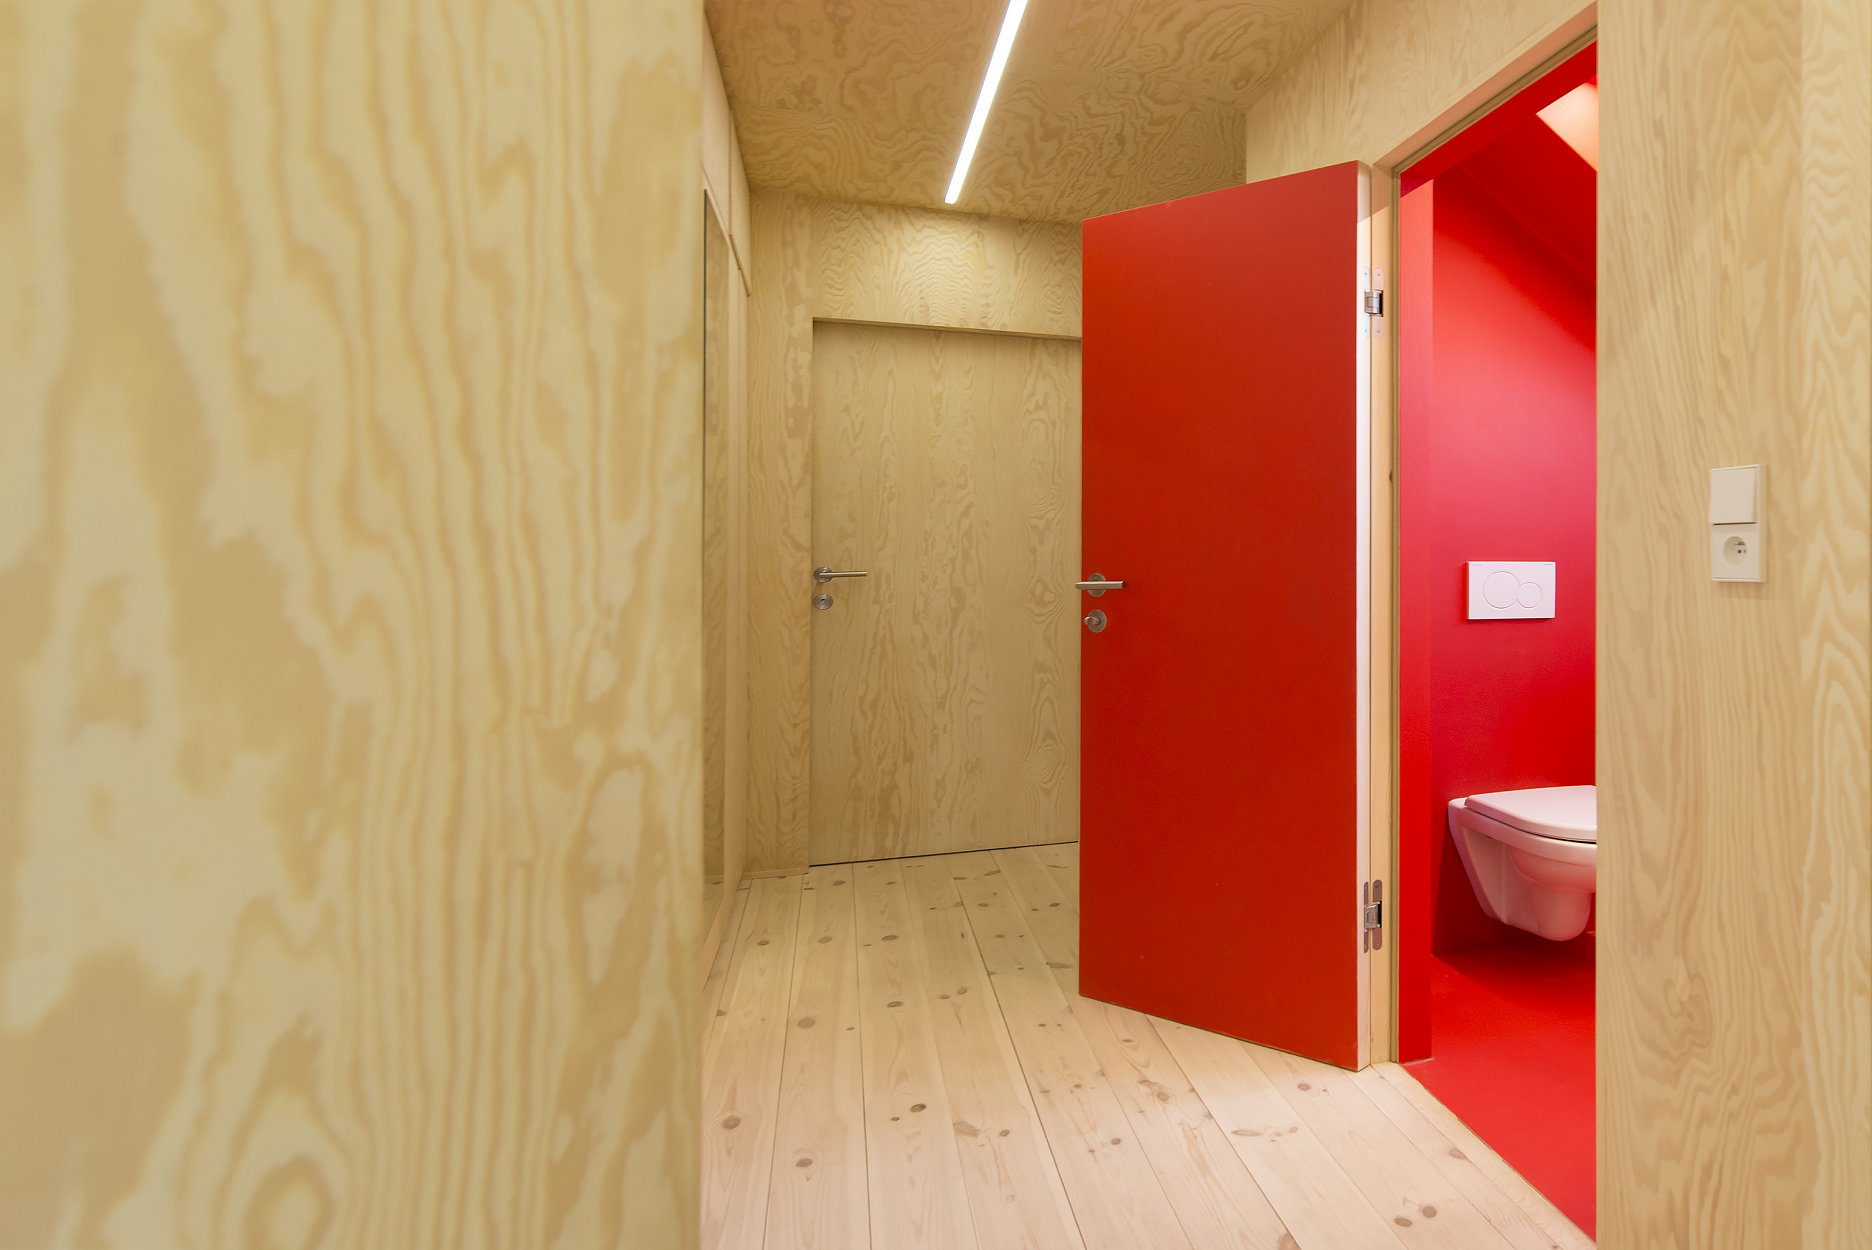 Medzi farebne odlíšené priestory zázemia patrí aj kúpeľňa.